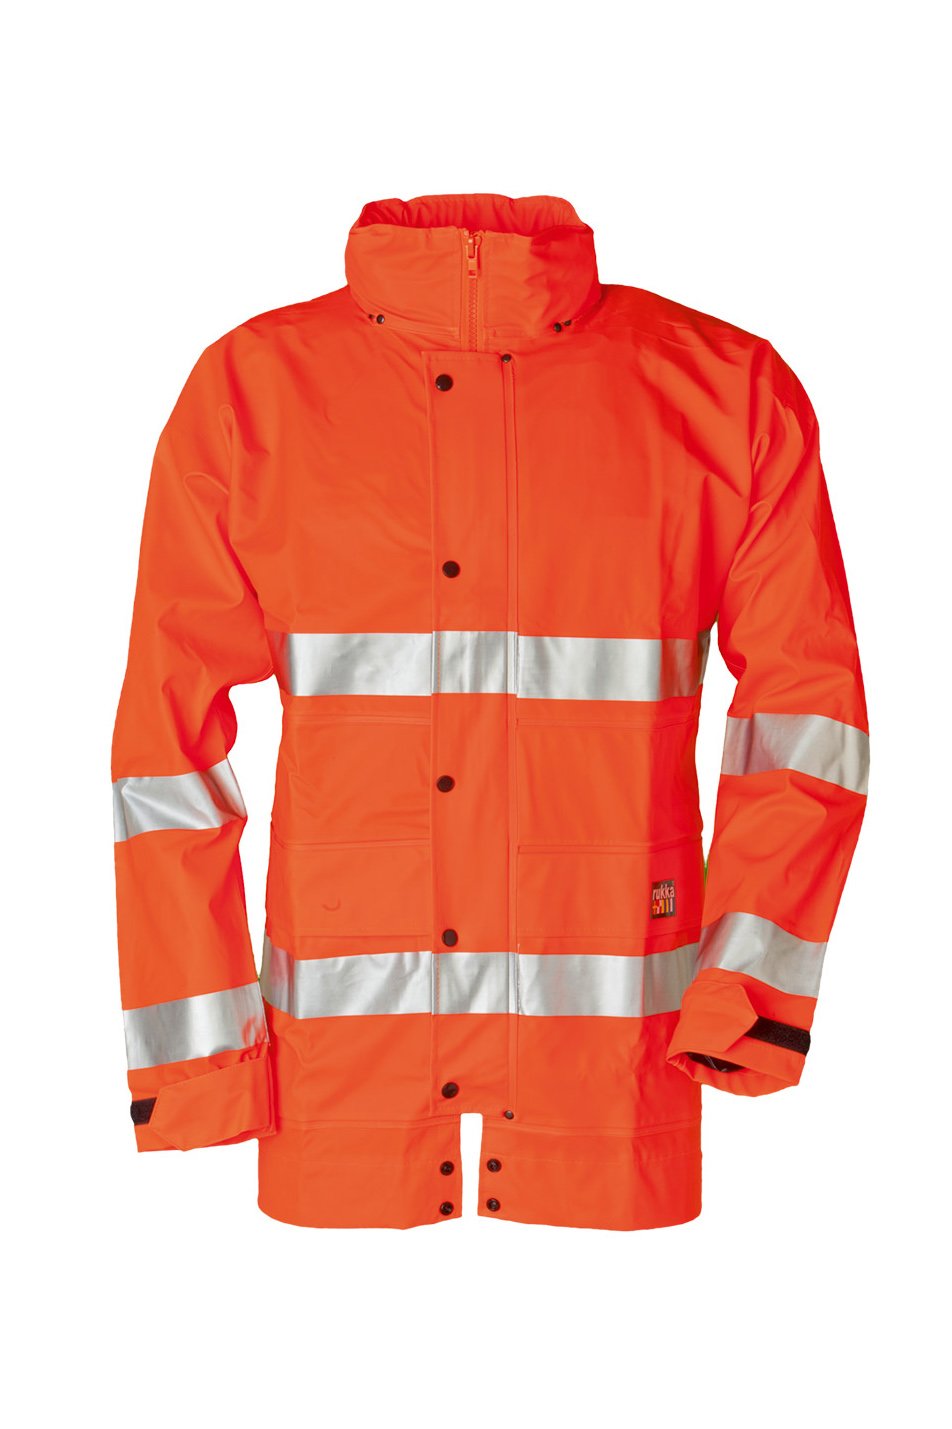 Warnschutz-Jacke, fluorescent orange, ISO 20471 Kl. 3